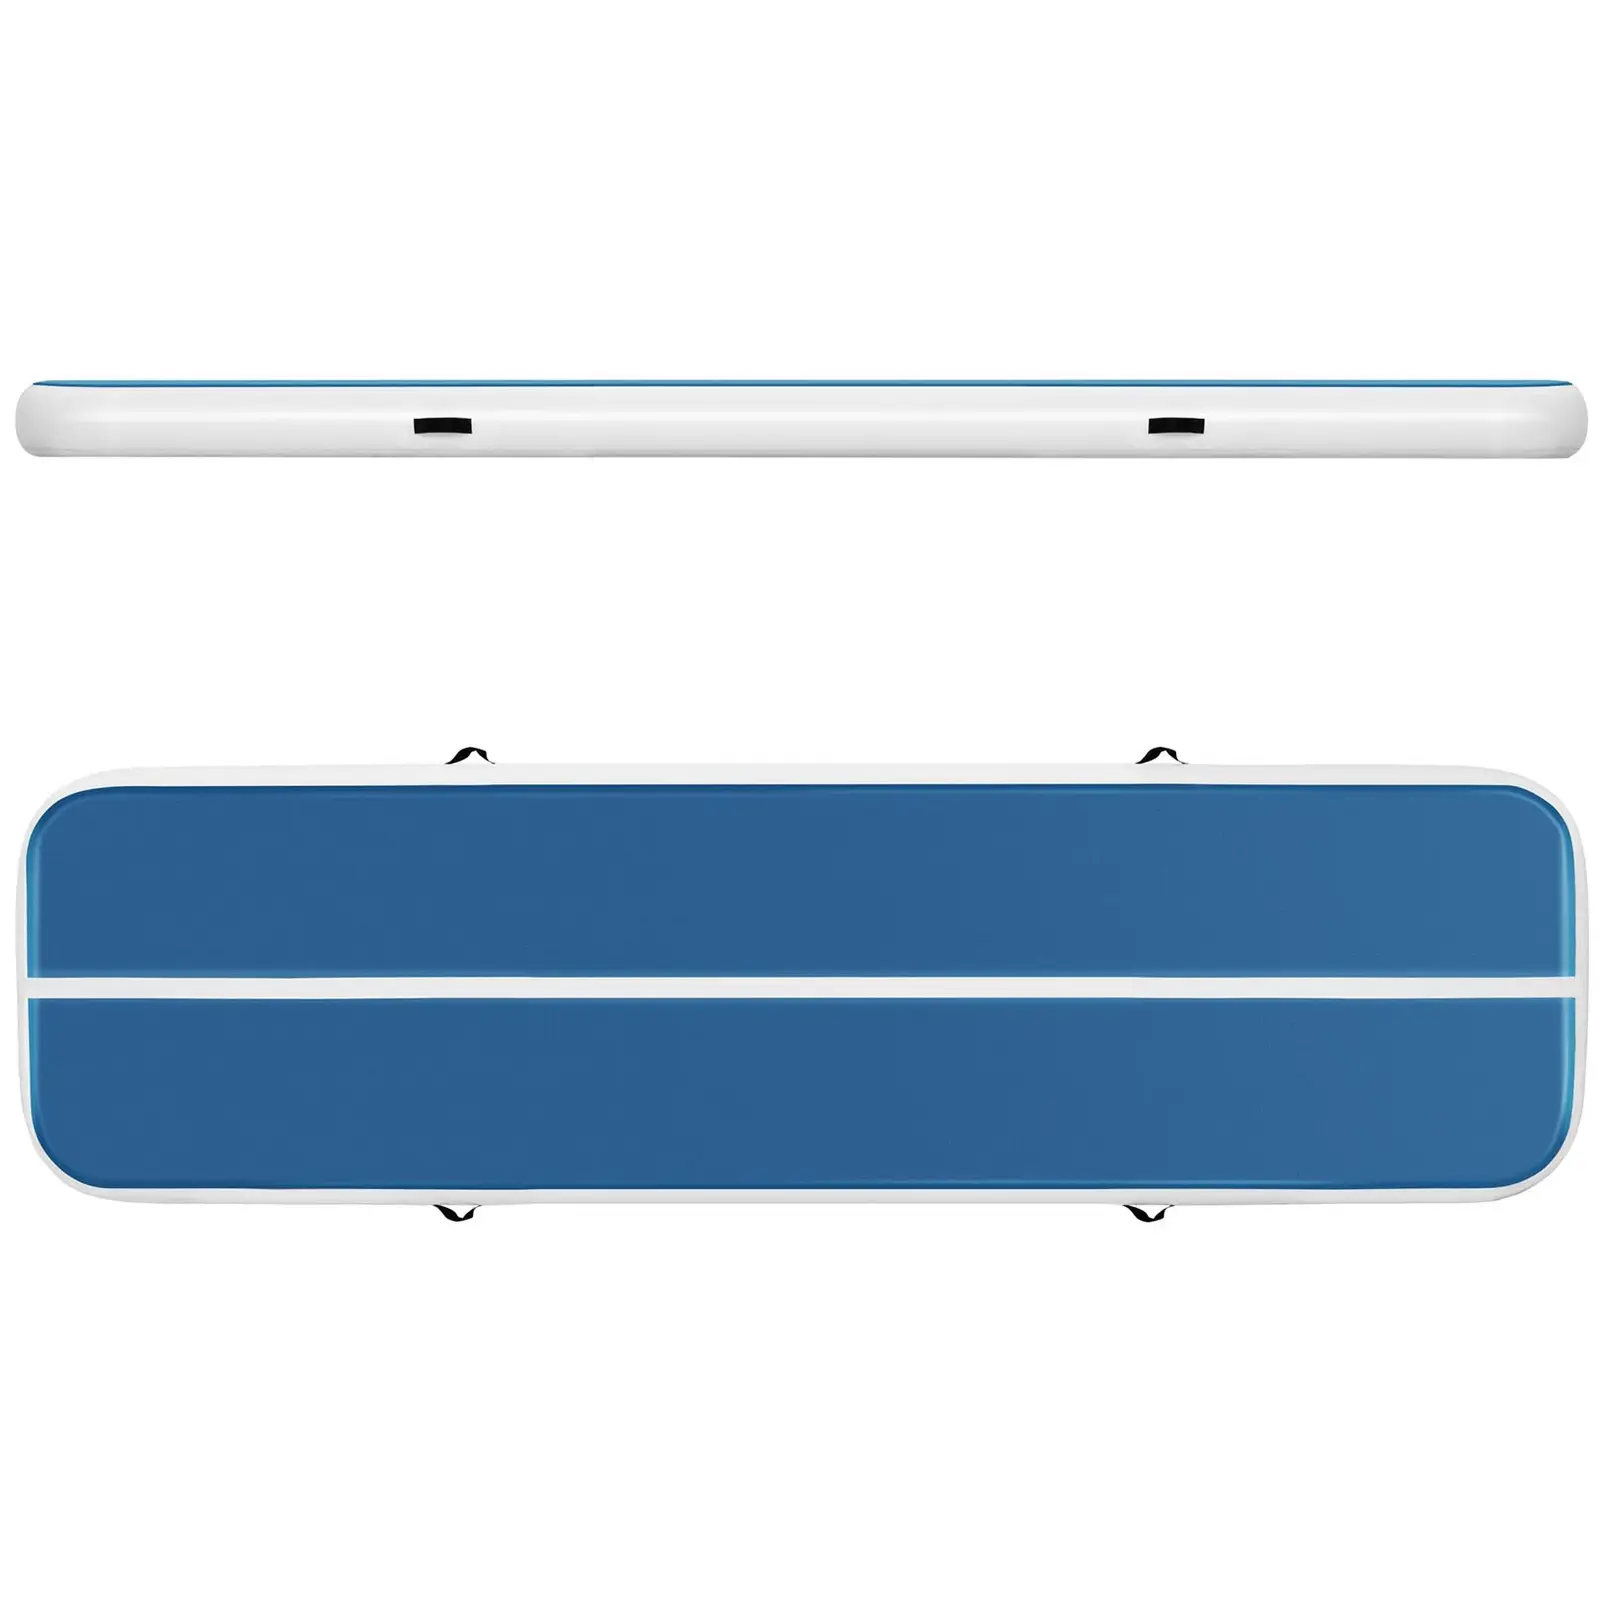 Colchoneta de gimnasia - 400 x 100 x 20 cm - 200 kg - azul/blanco